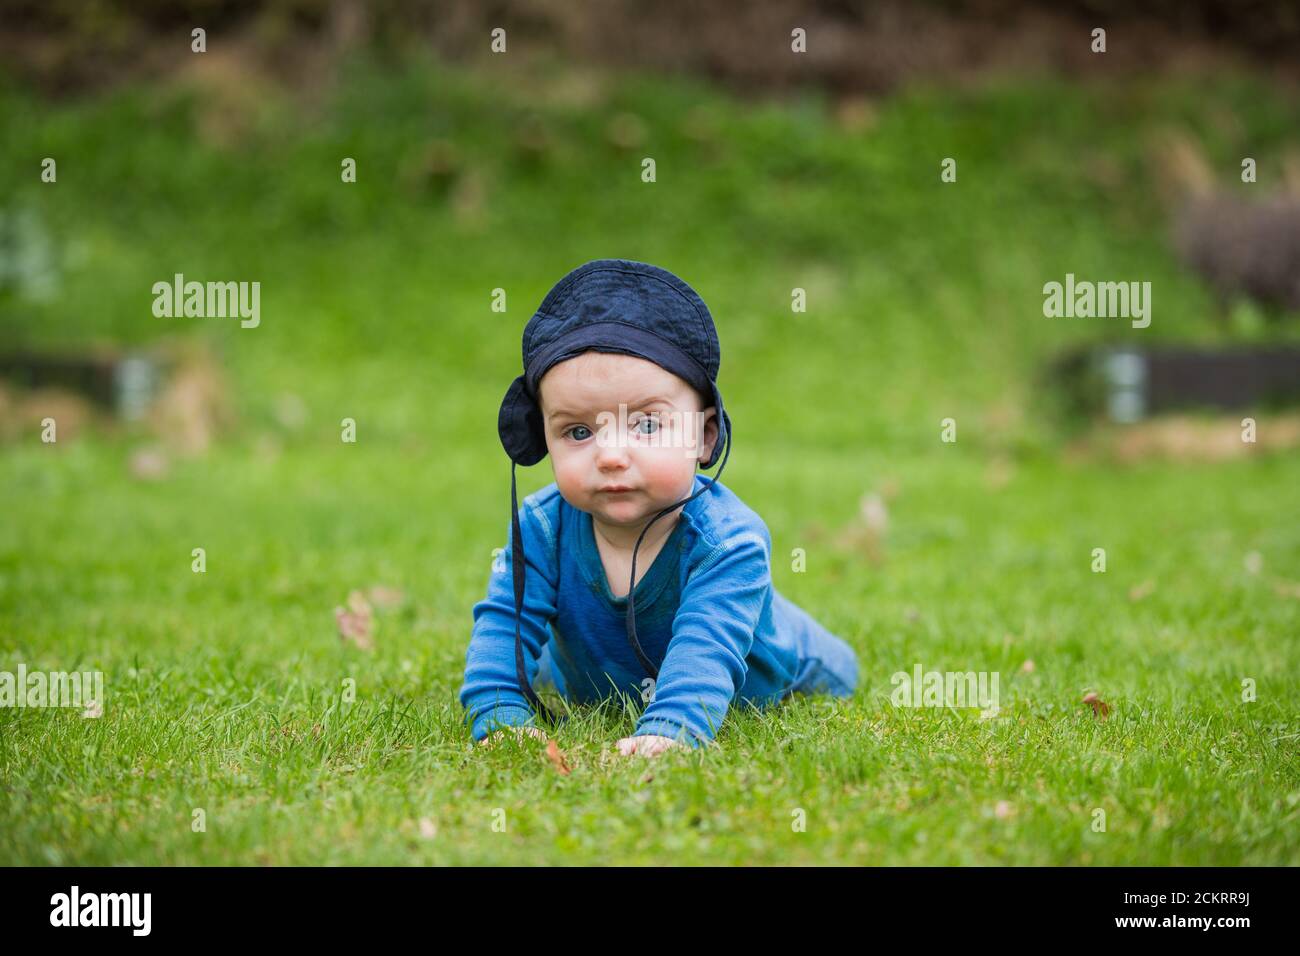 bébé de 6 mois rampant dehors dans l'herbe verte Banque D'Images